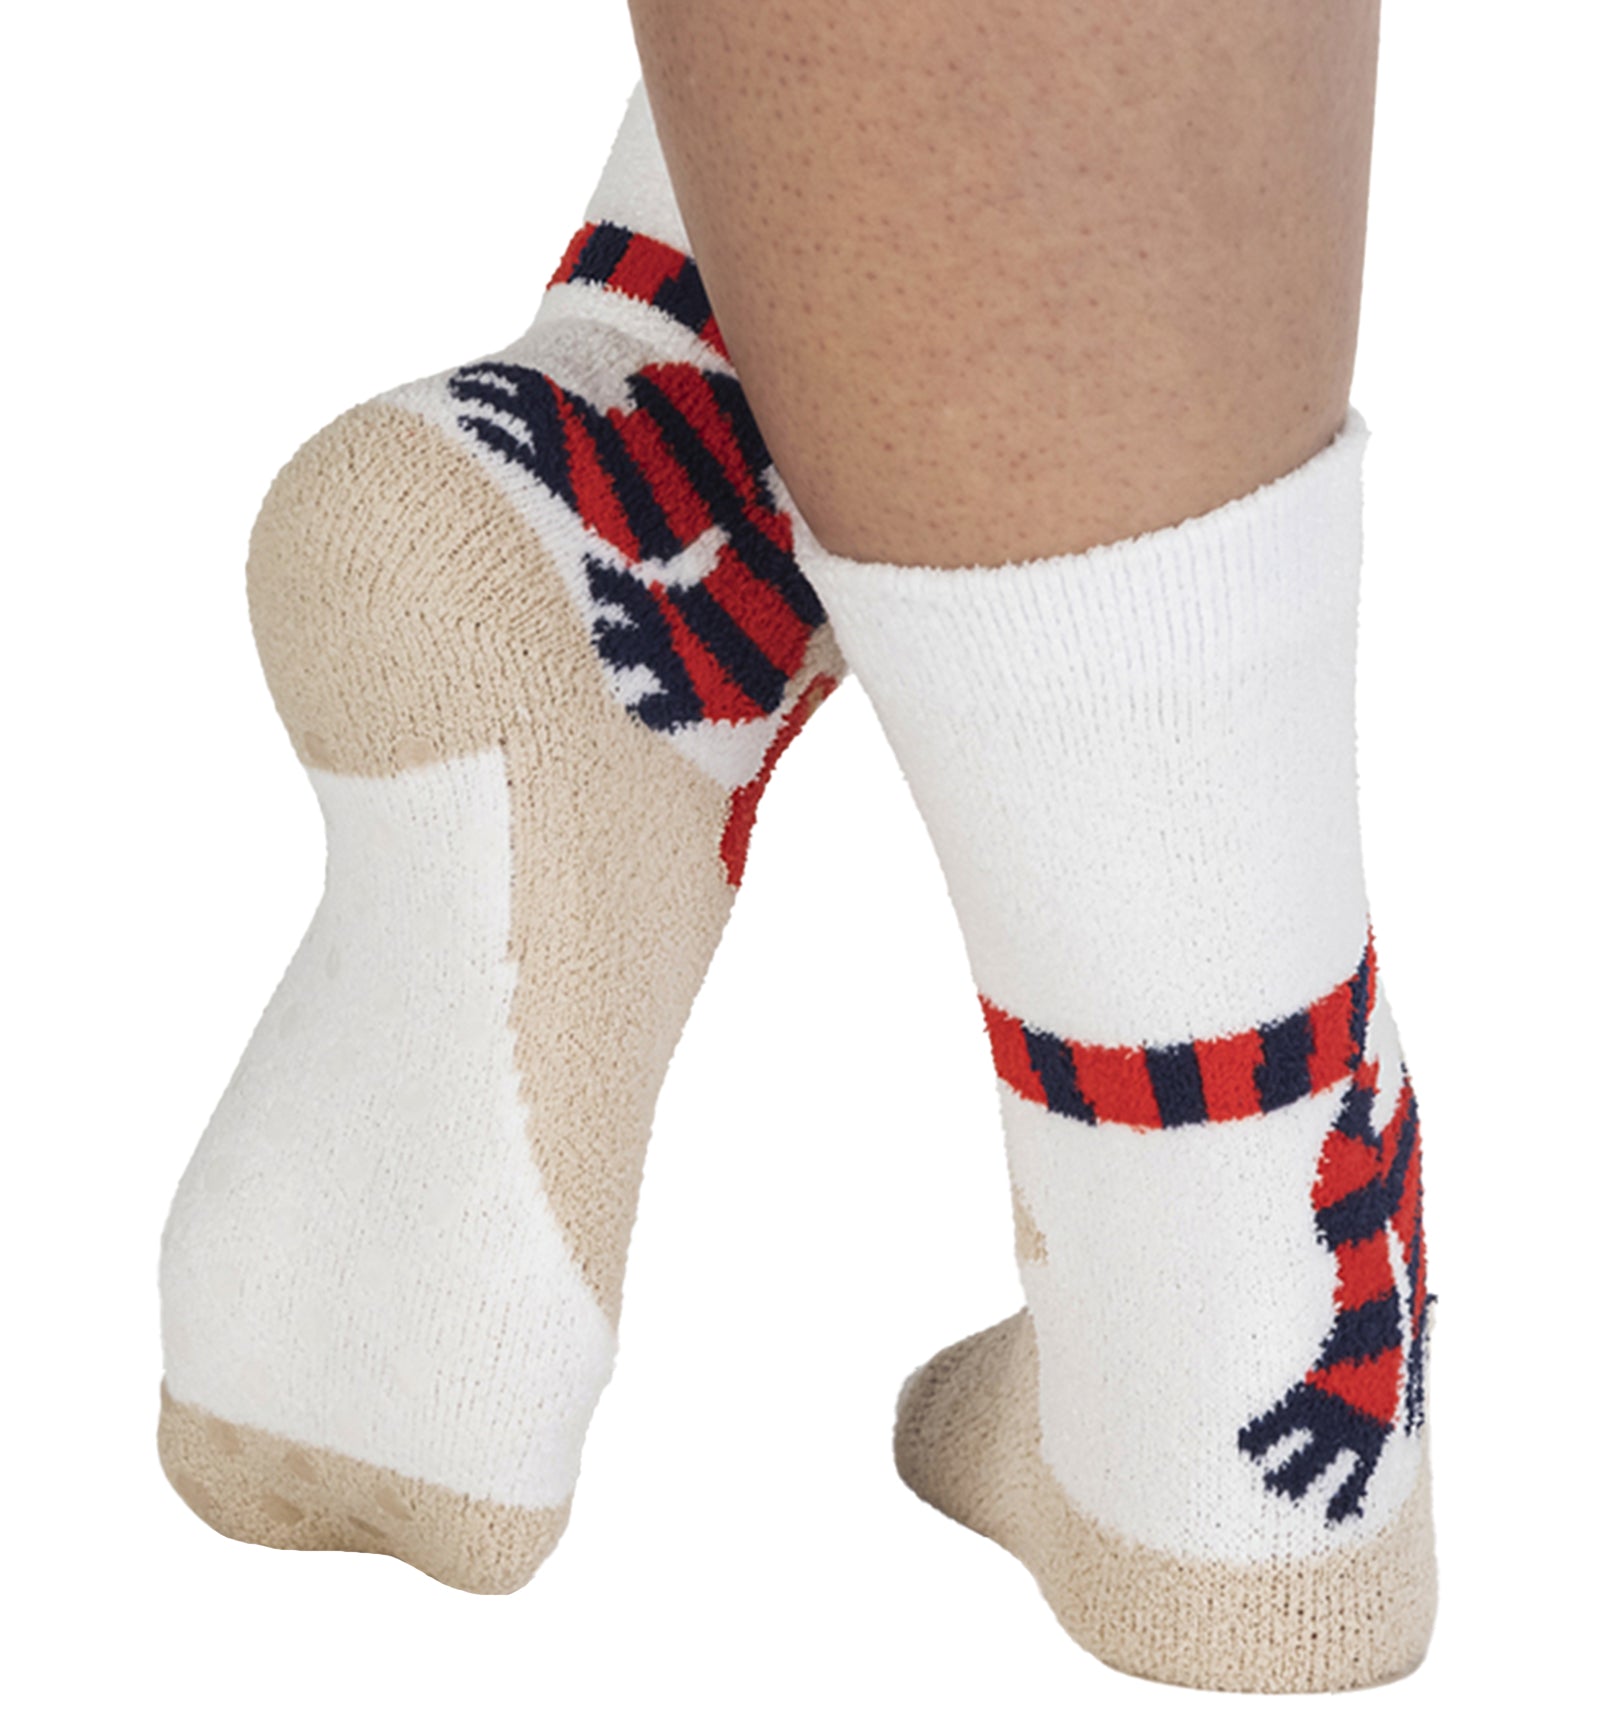 SOCK it to me Slipper Socks (CZ0016),So Beary Cute - So Beary Cute,One Size